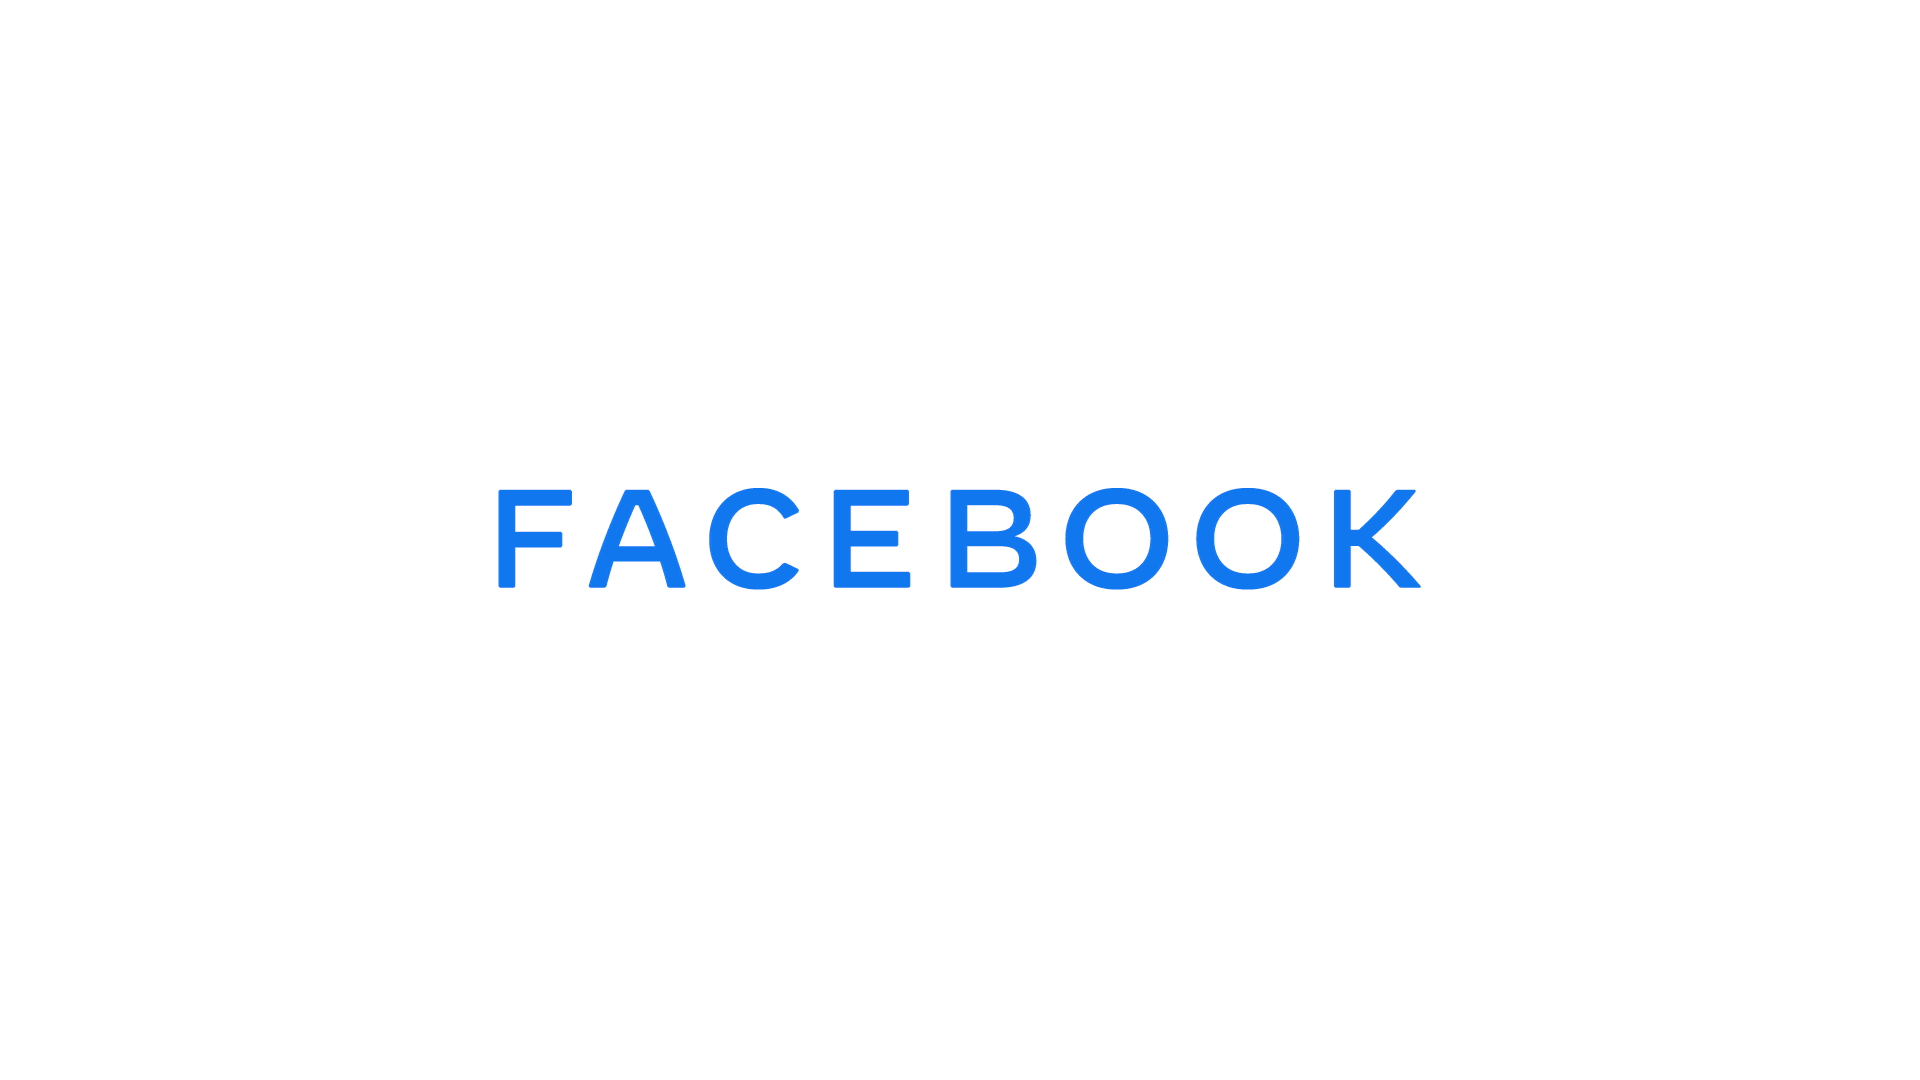 FacebookからFACEBOOKへ。フェイスブックが再ブランド、グループ全体のブランド力を強化したい考え